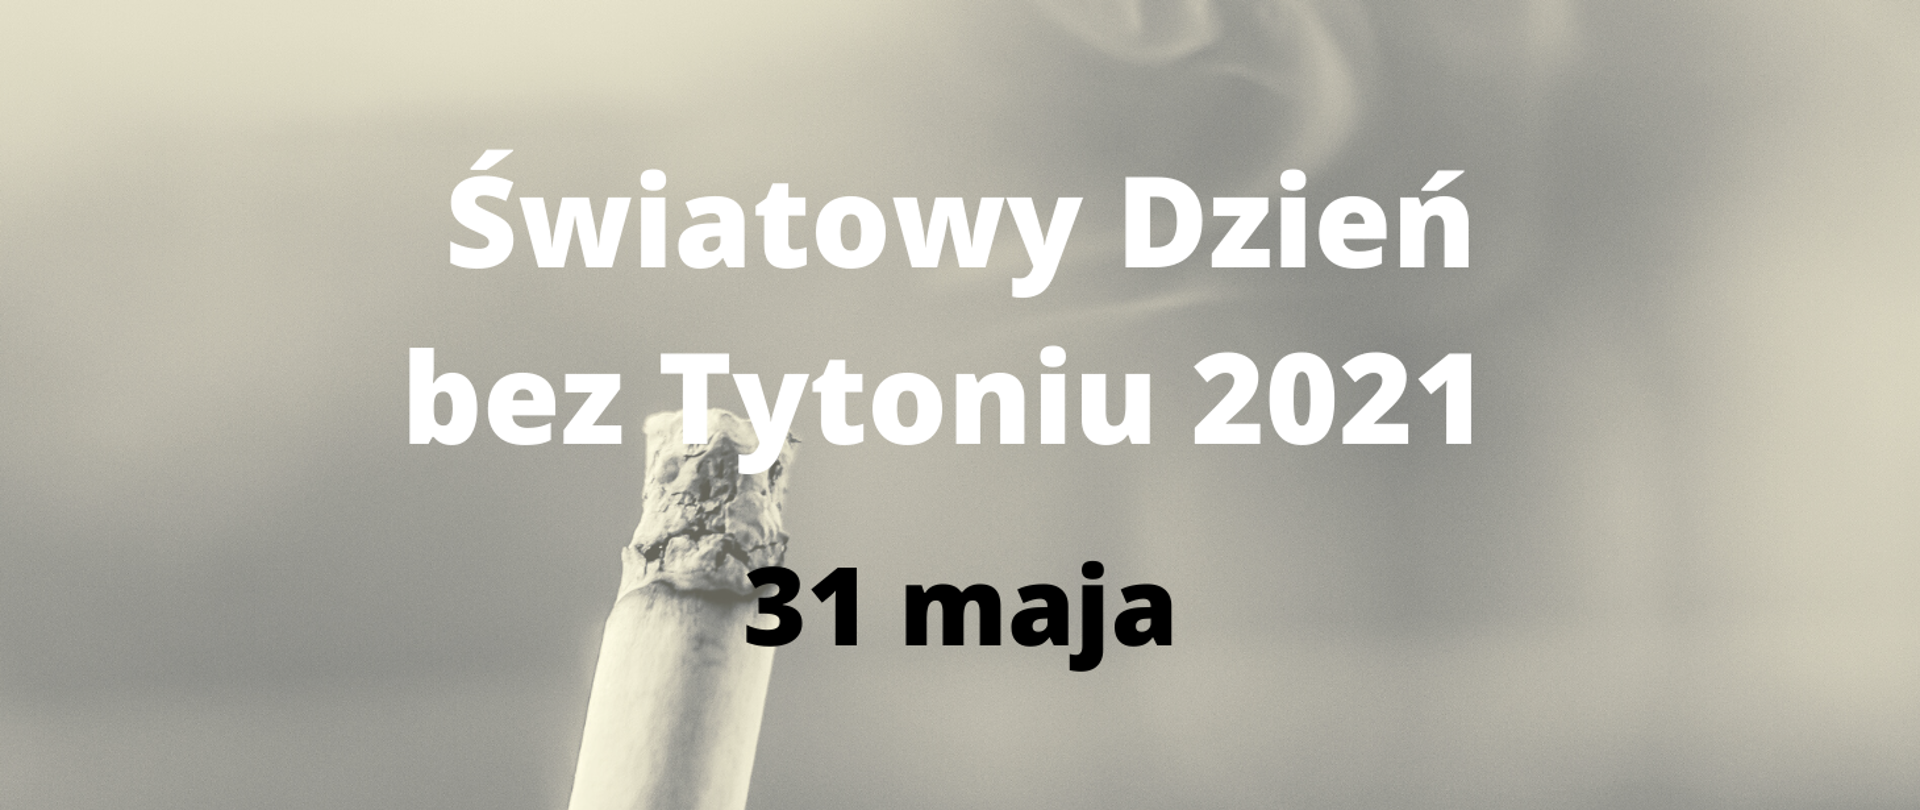 Tekst na grafice: Światowy Dzień bez Tytoniu 2021 31 maja. W tle dymiący papieros.